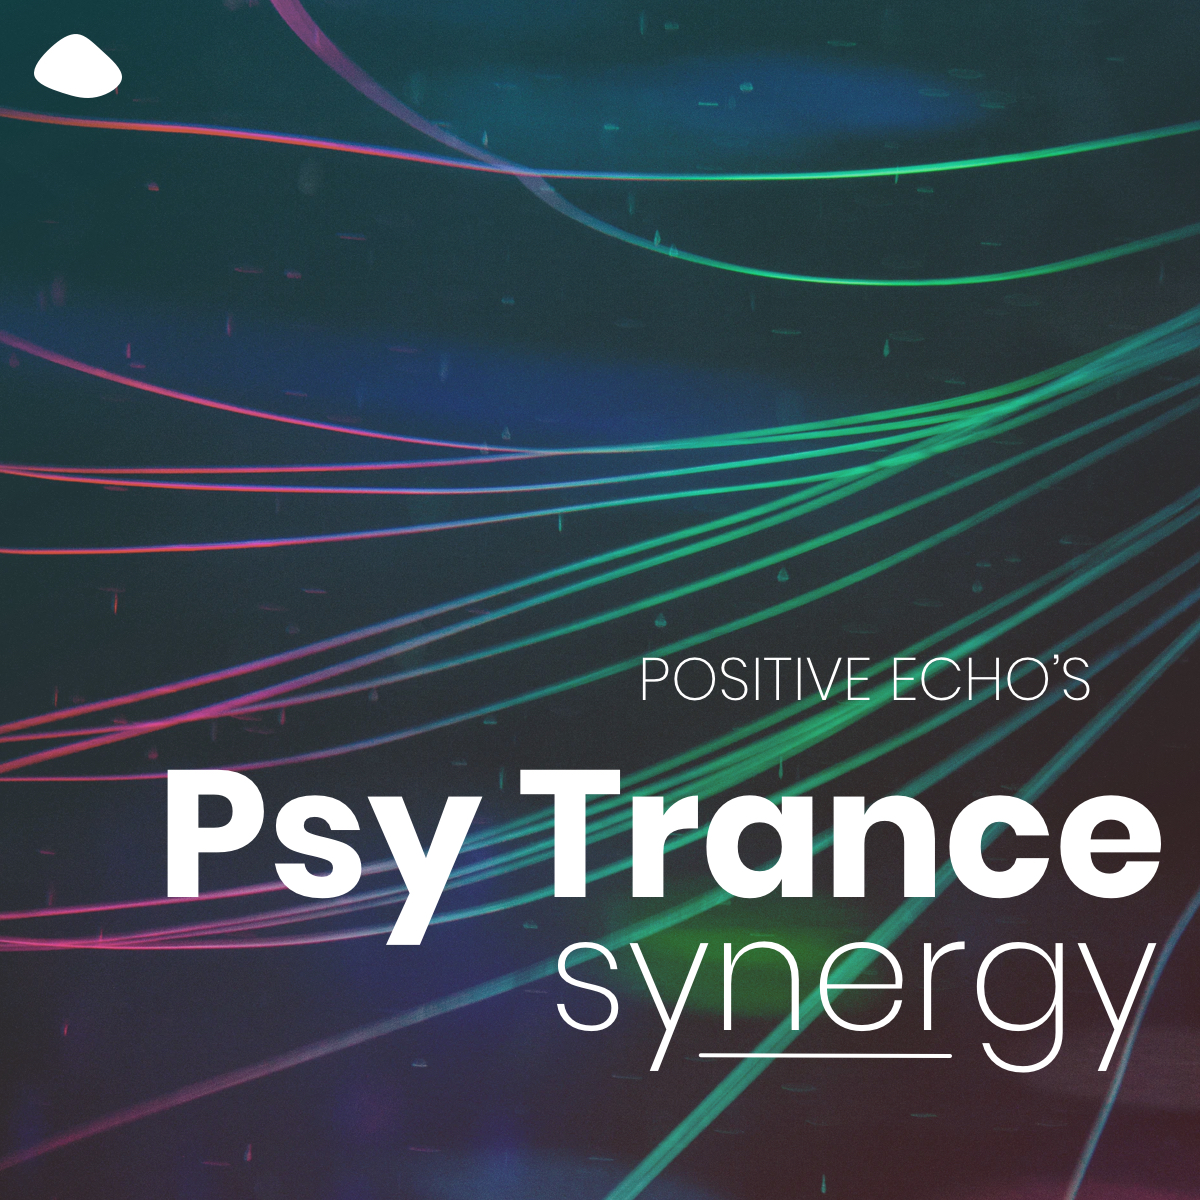 Psy-Trance Synergy Spotify Playlist Cover Image